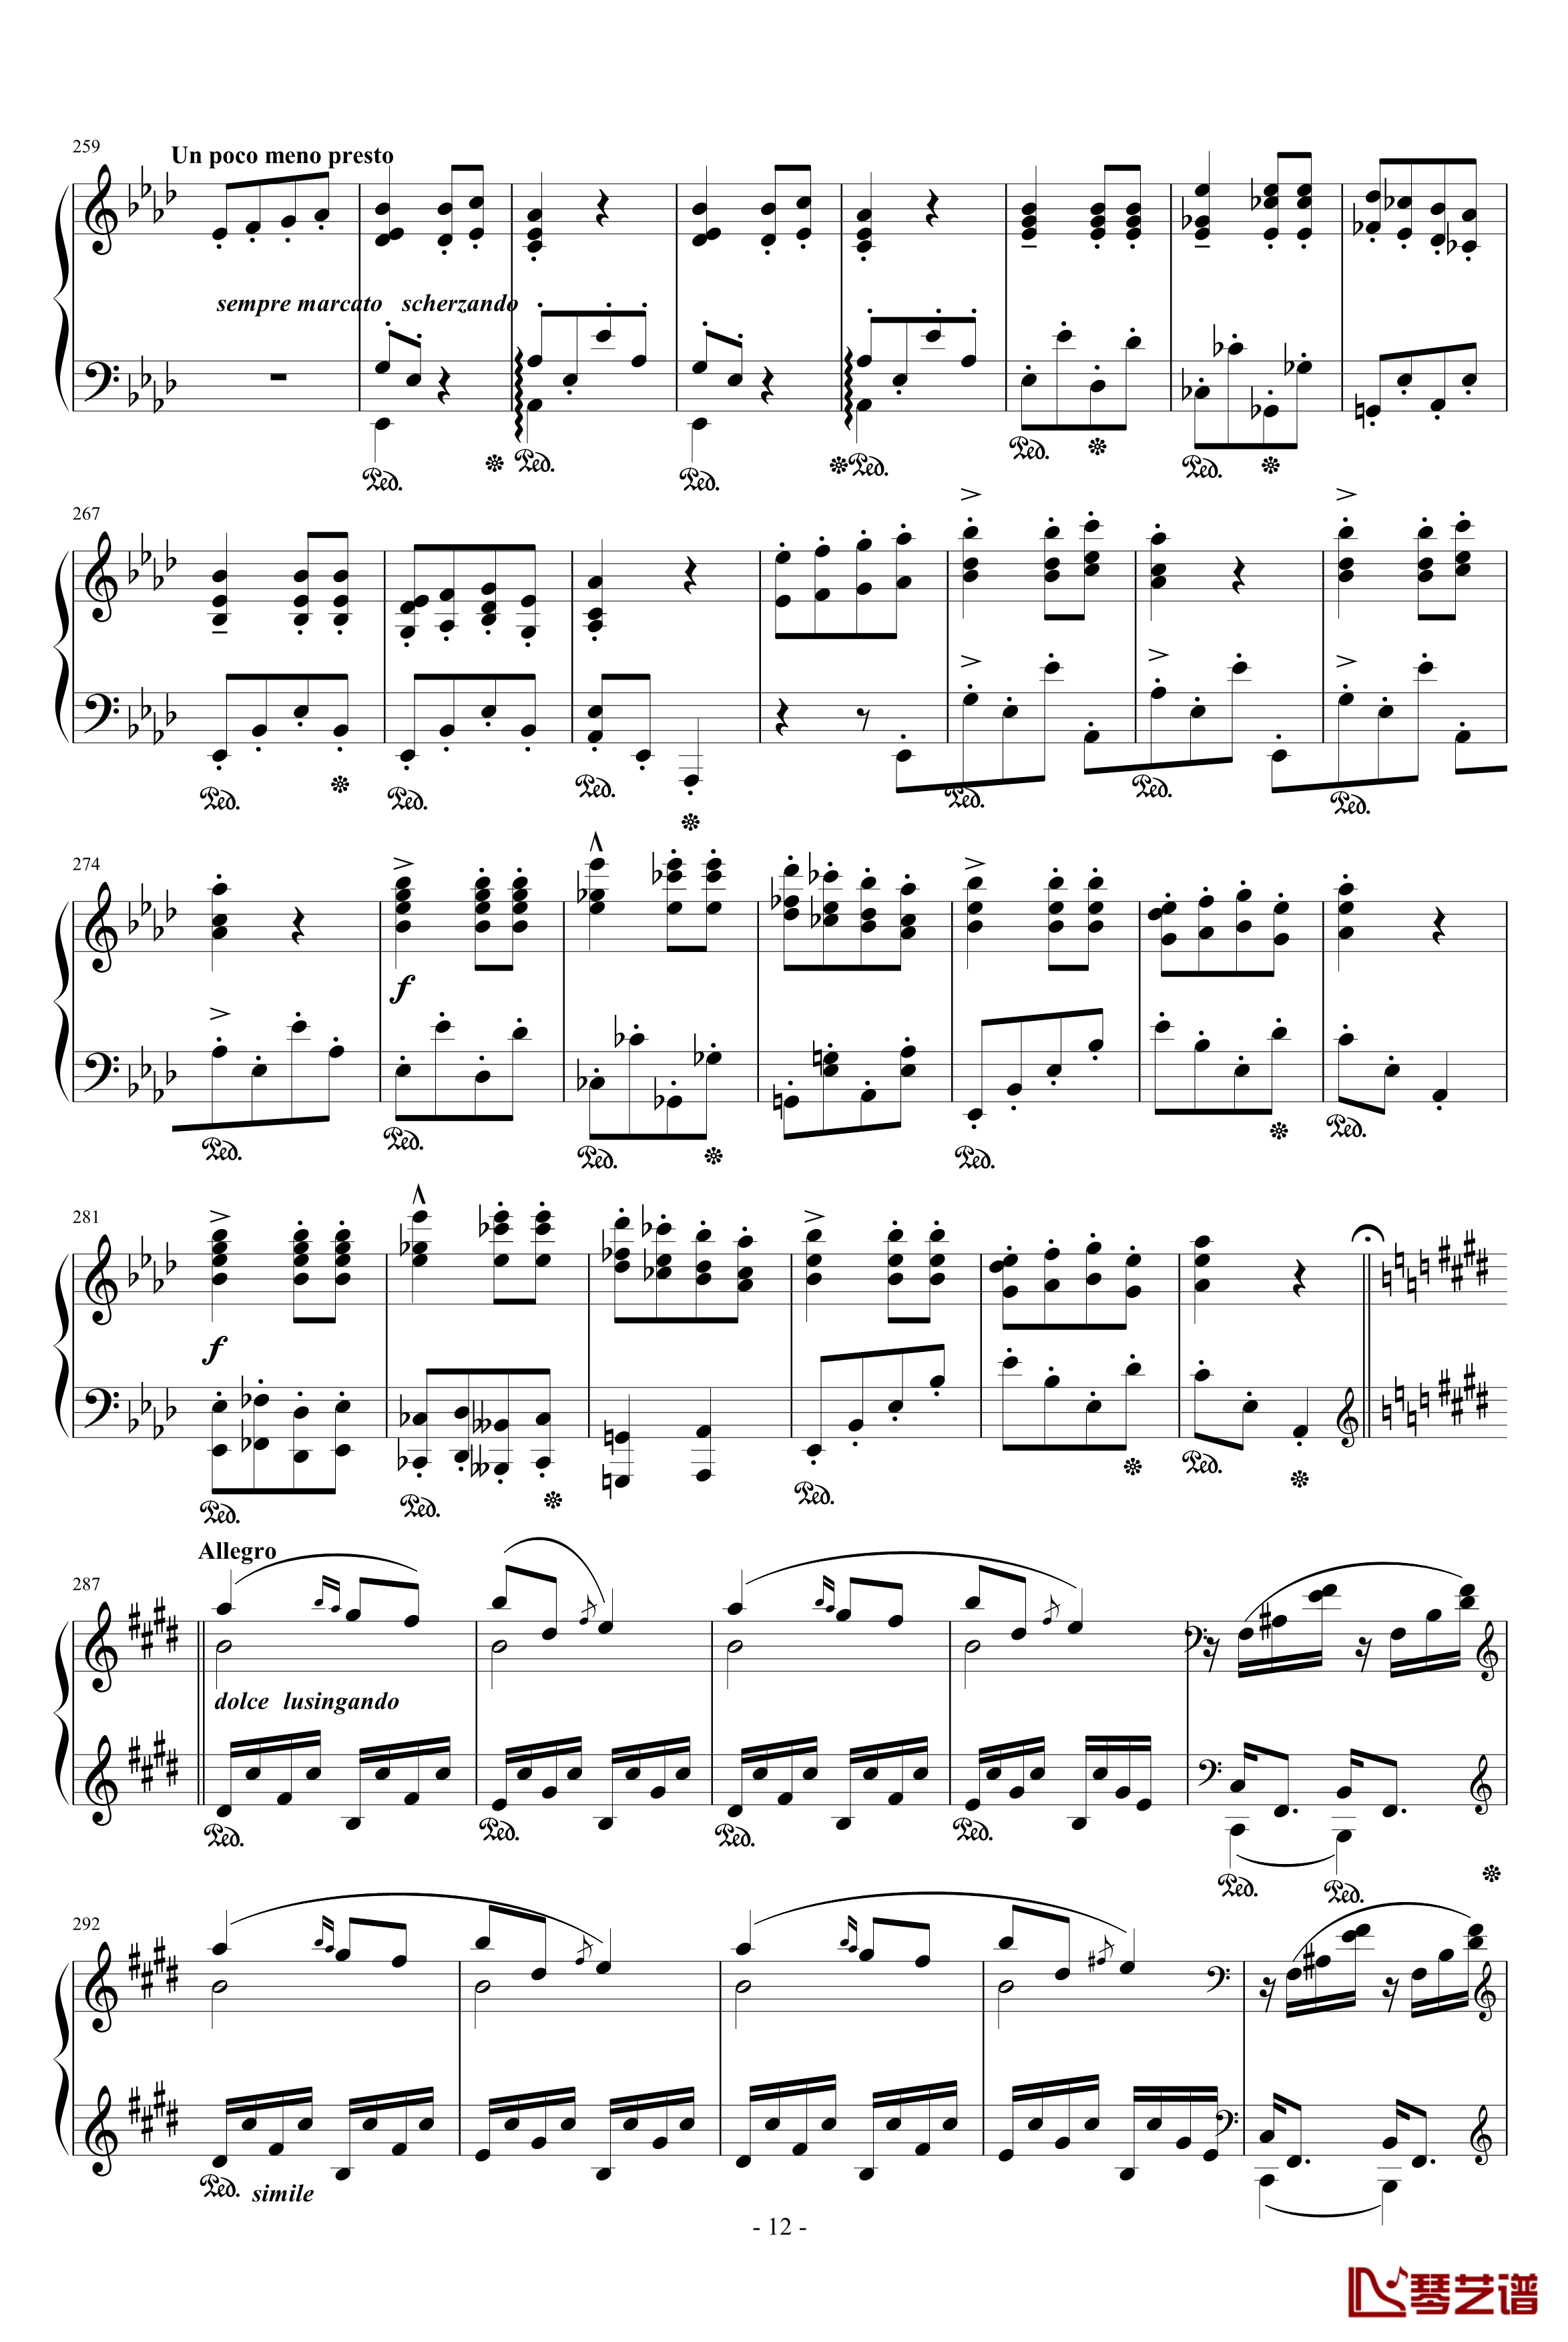 匈牙利狂想曲第9号钢琴谱-19首匈狂里篇幅最浩大、技巧最艰深的作品之一-李斯特12